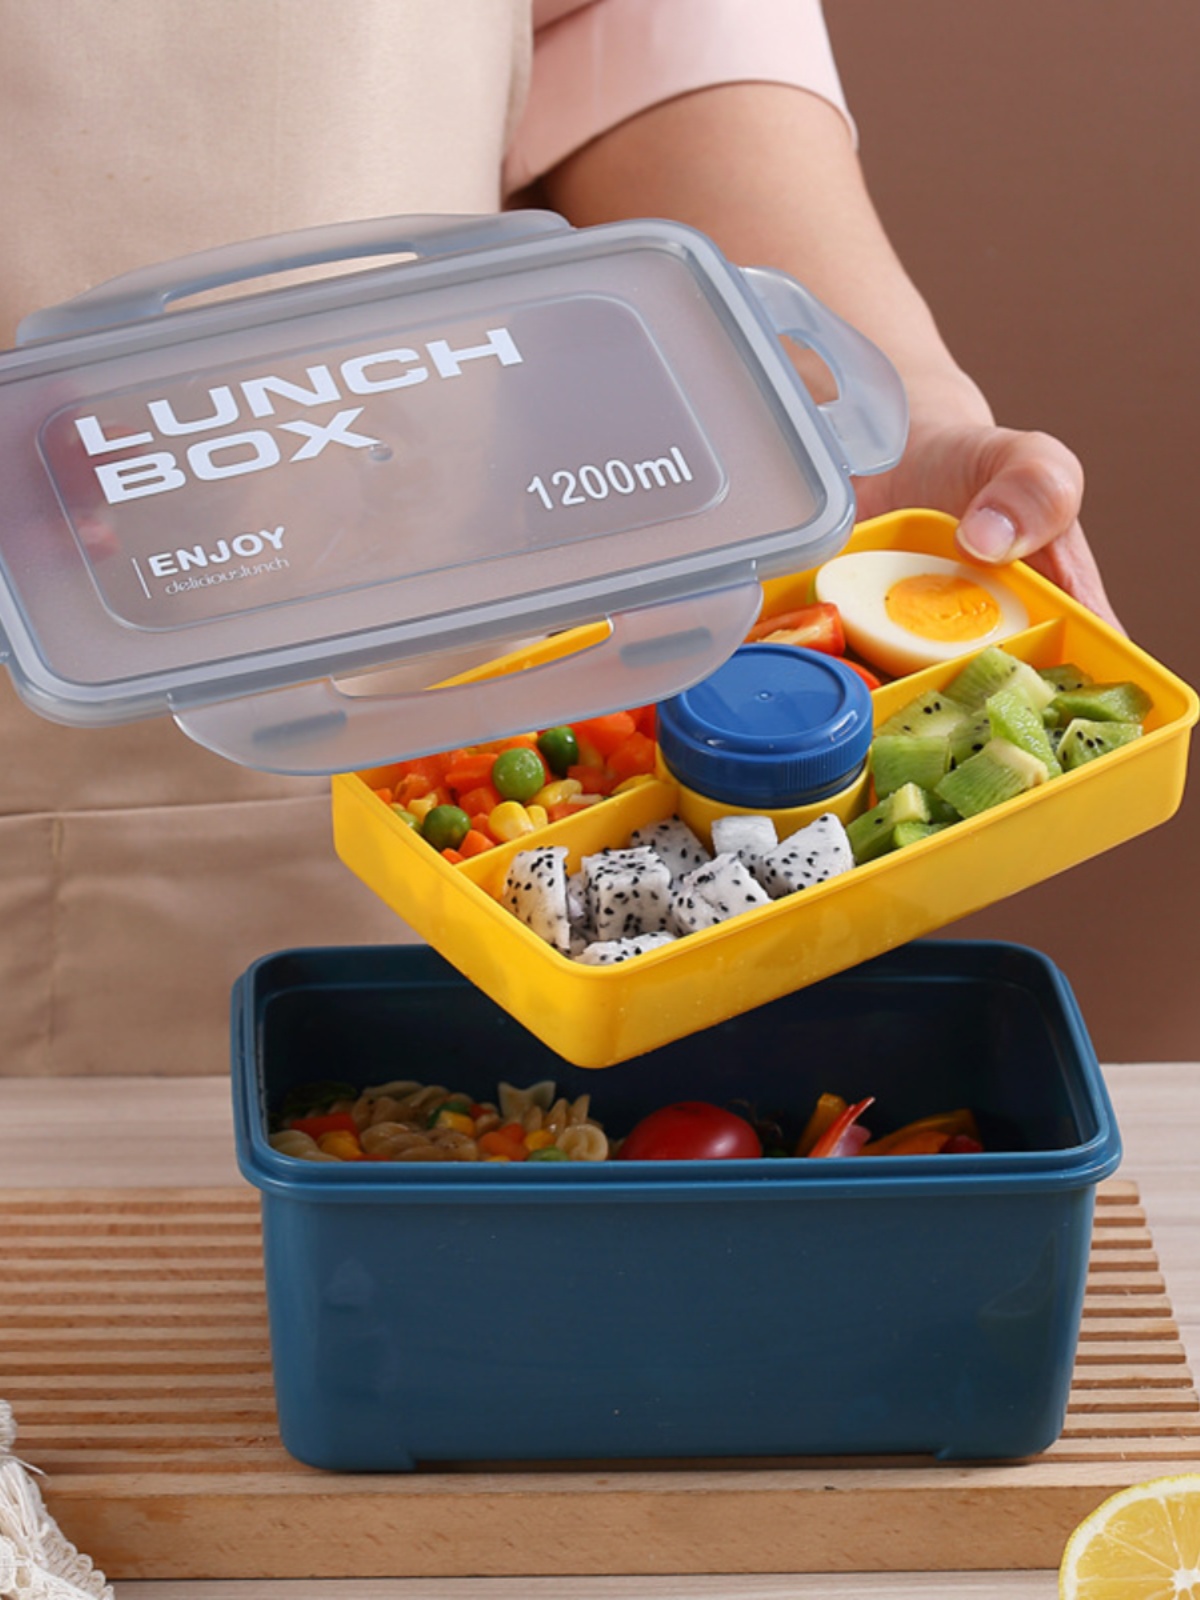 日式風格塑料2層便當盒1200ml容量適合上班族兒童使用